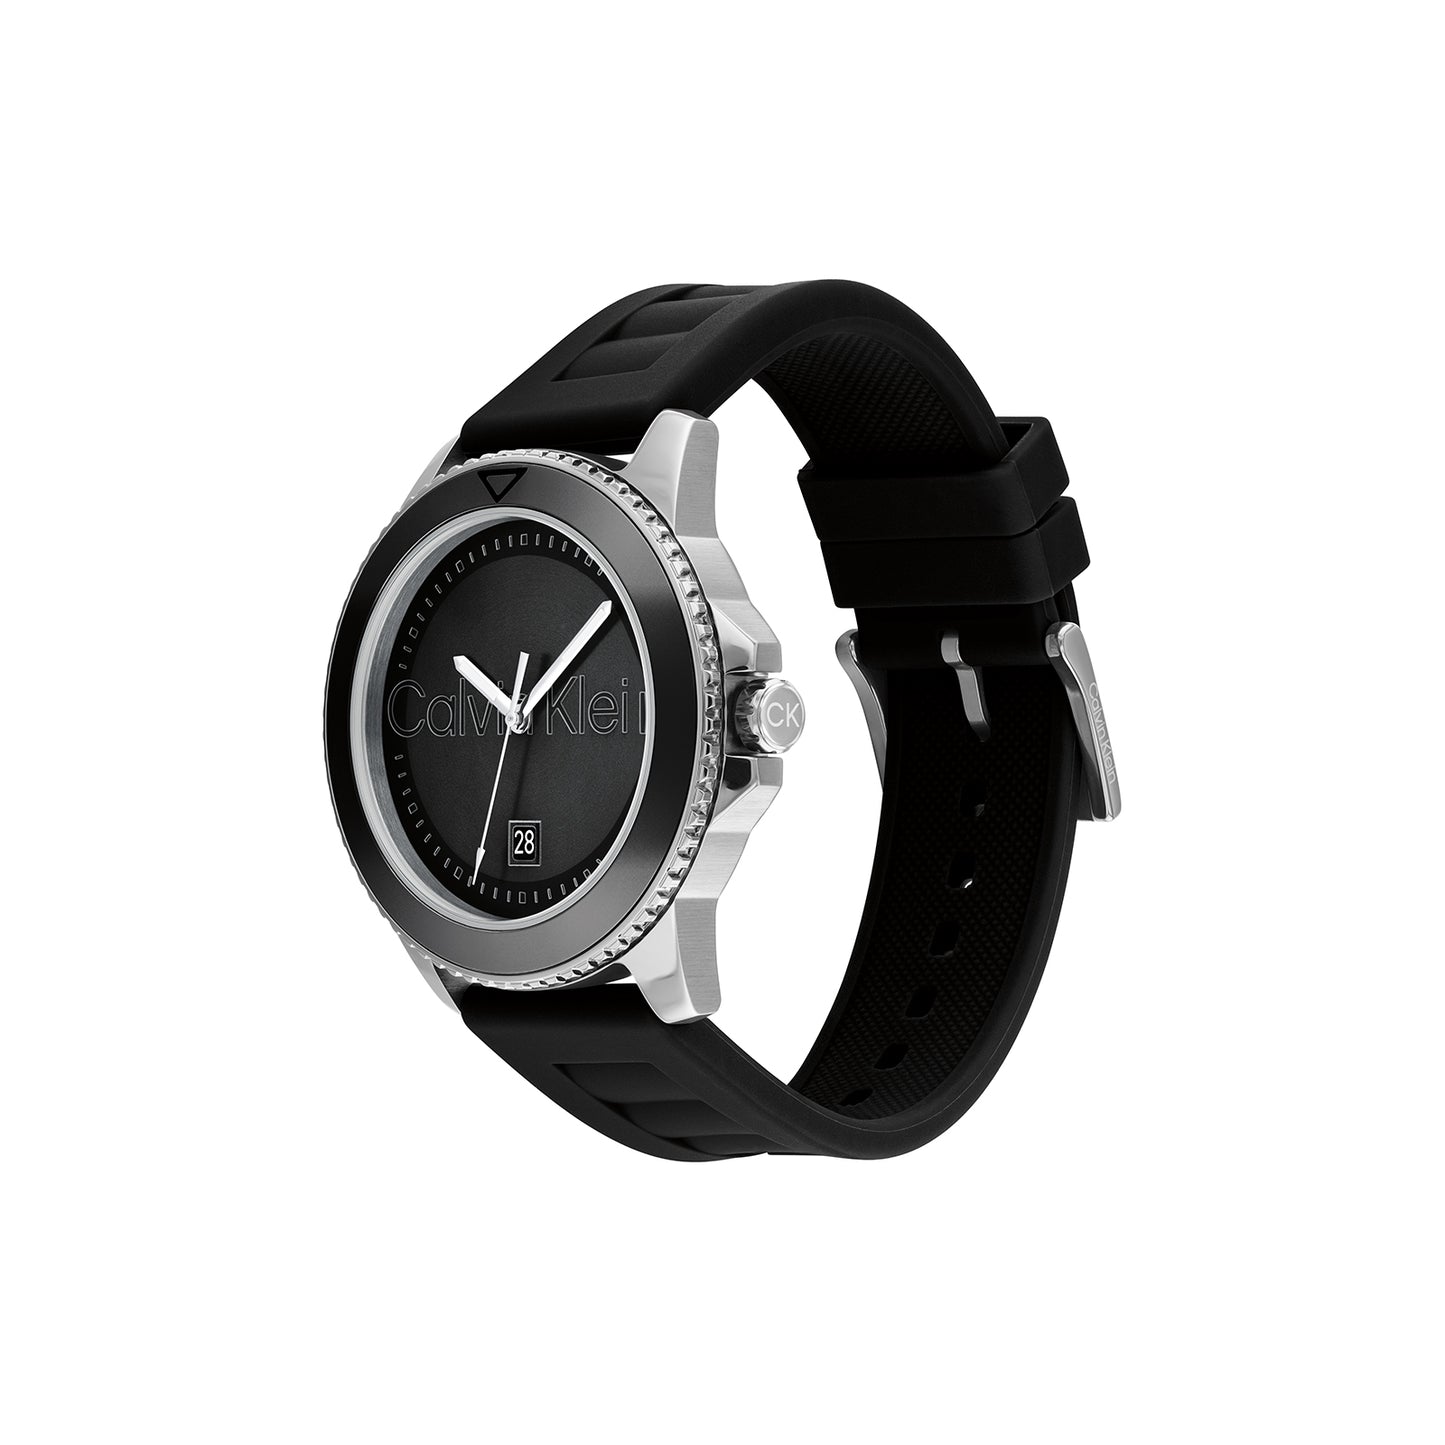 Calvin Klein 25200386 Men's Silicone Watch